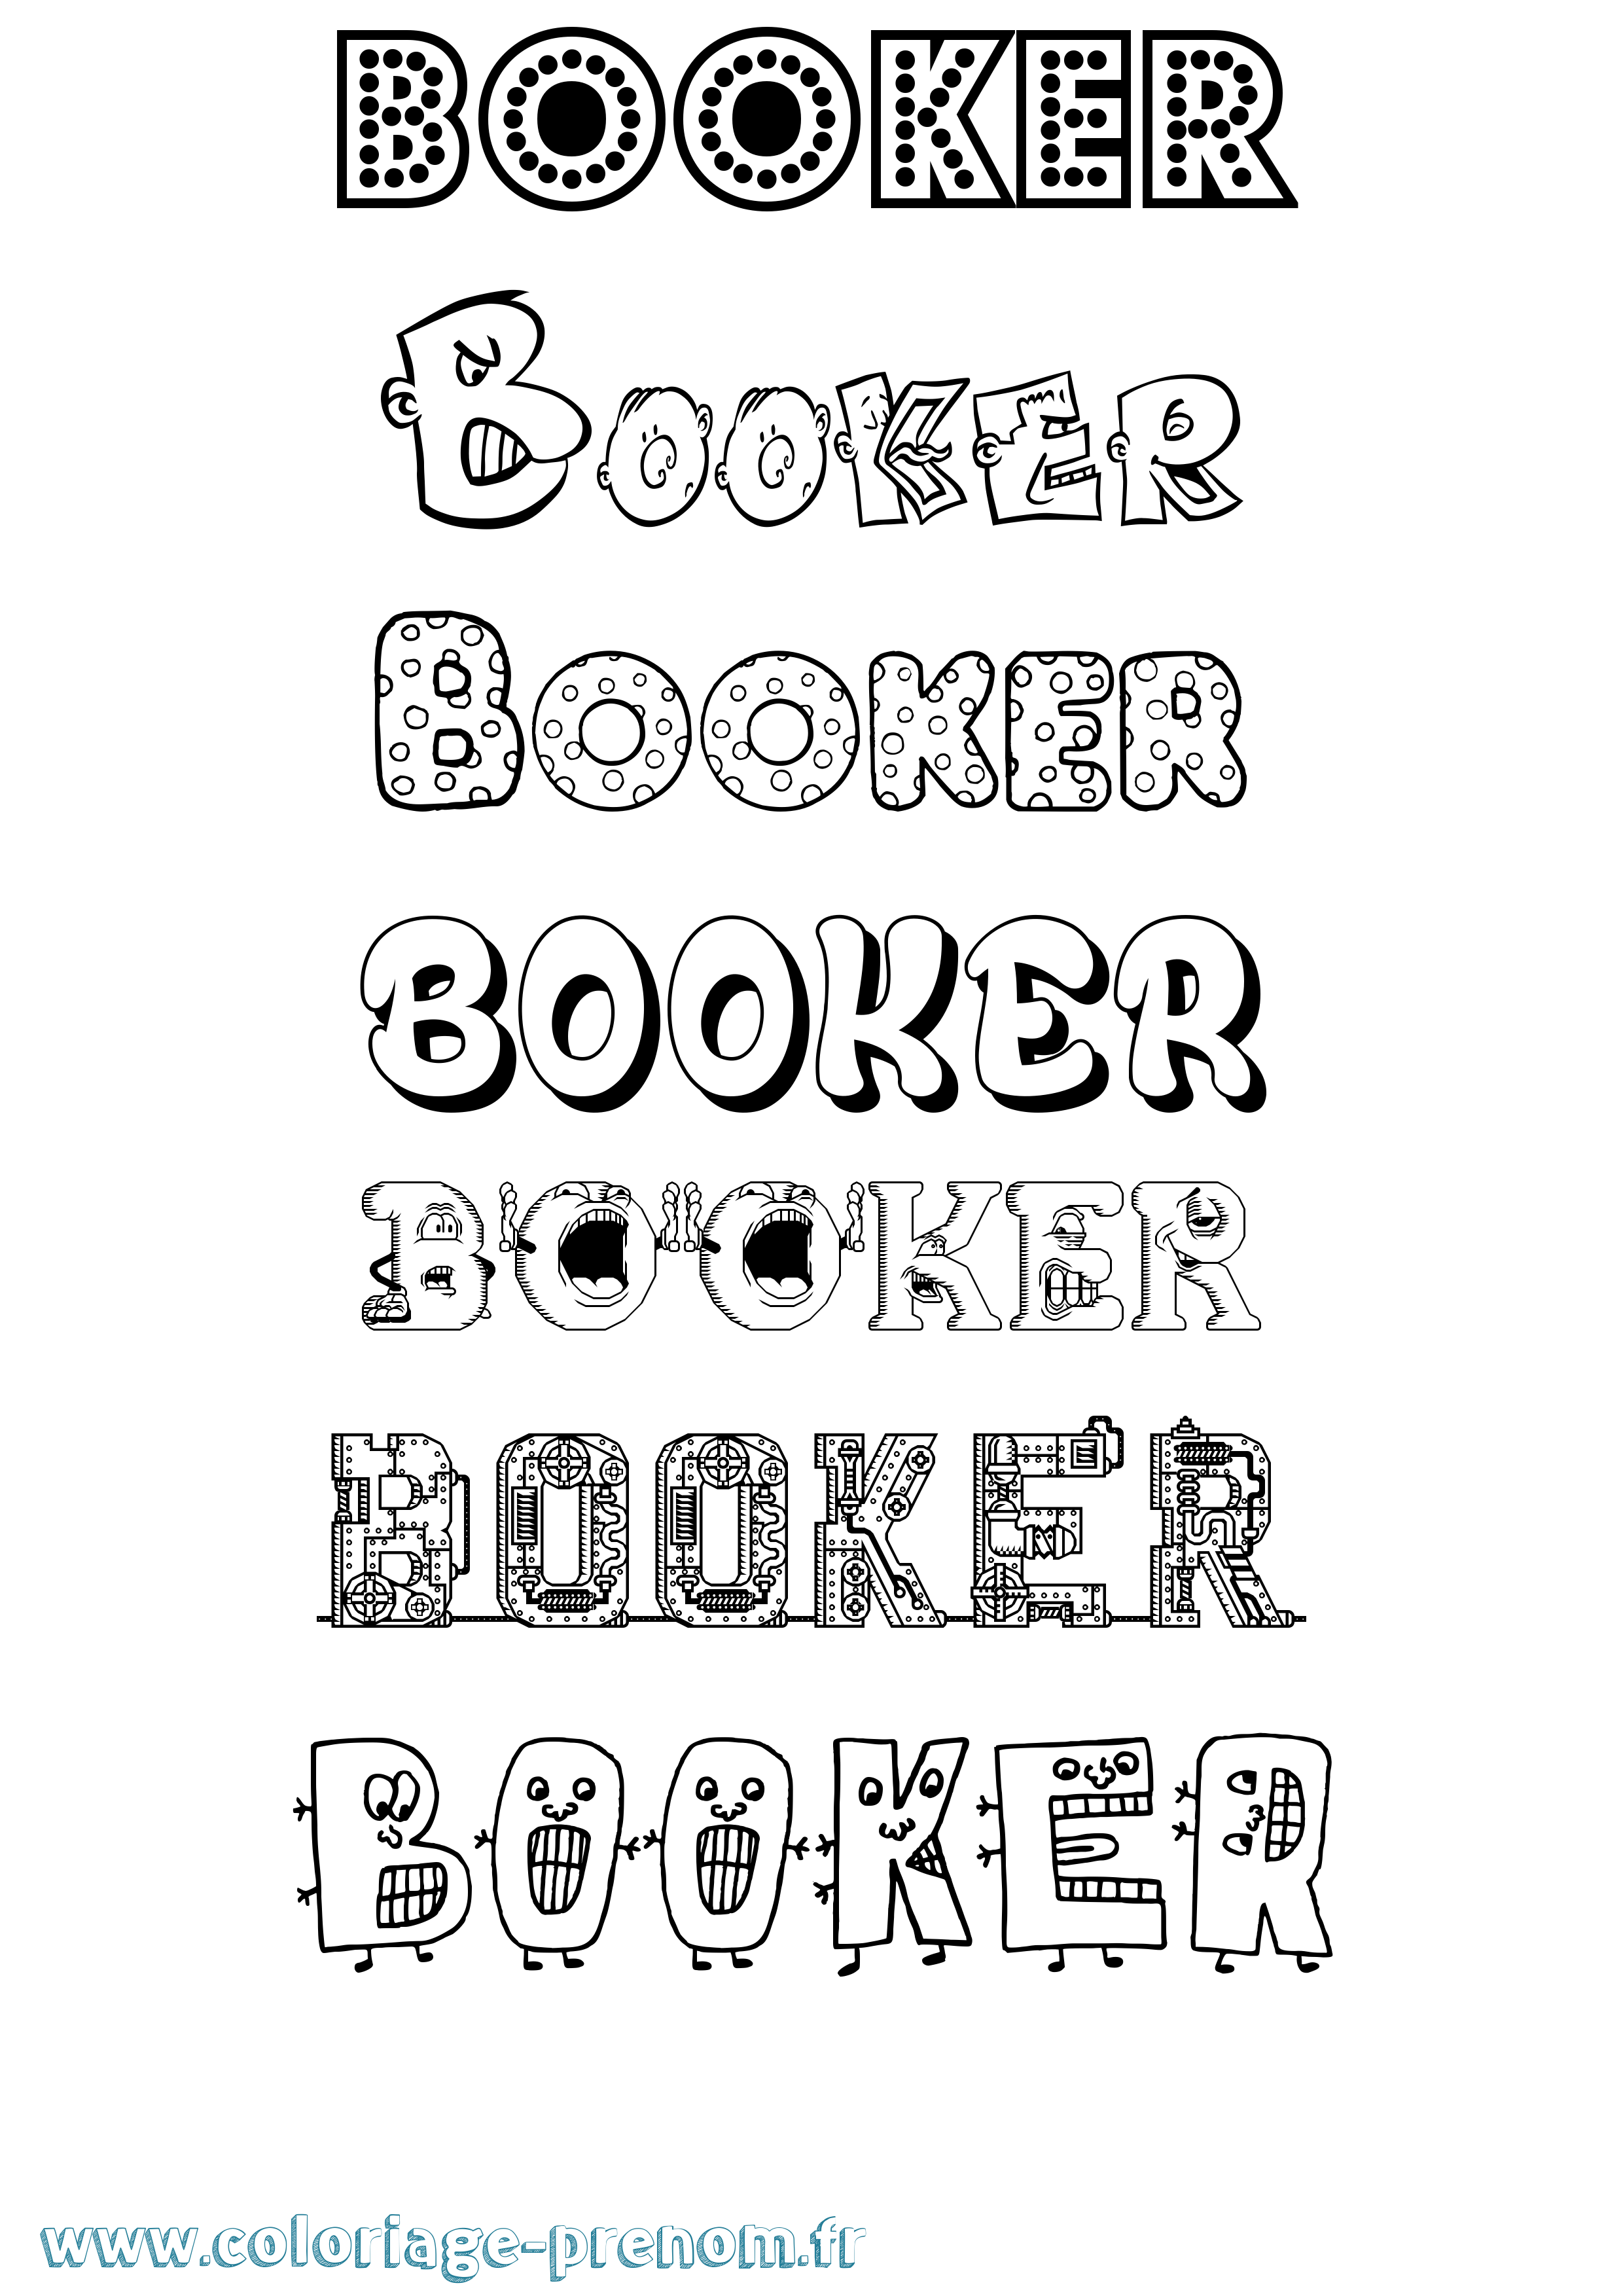 Coloriage prénom Booker Fun